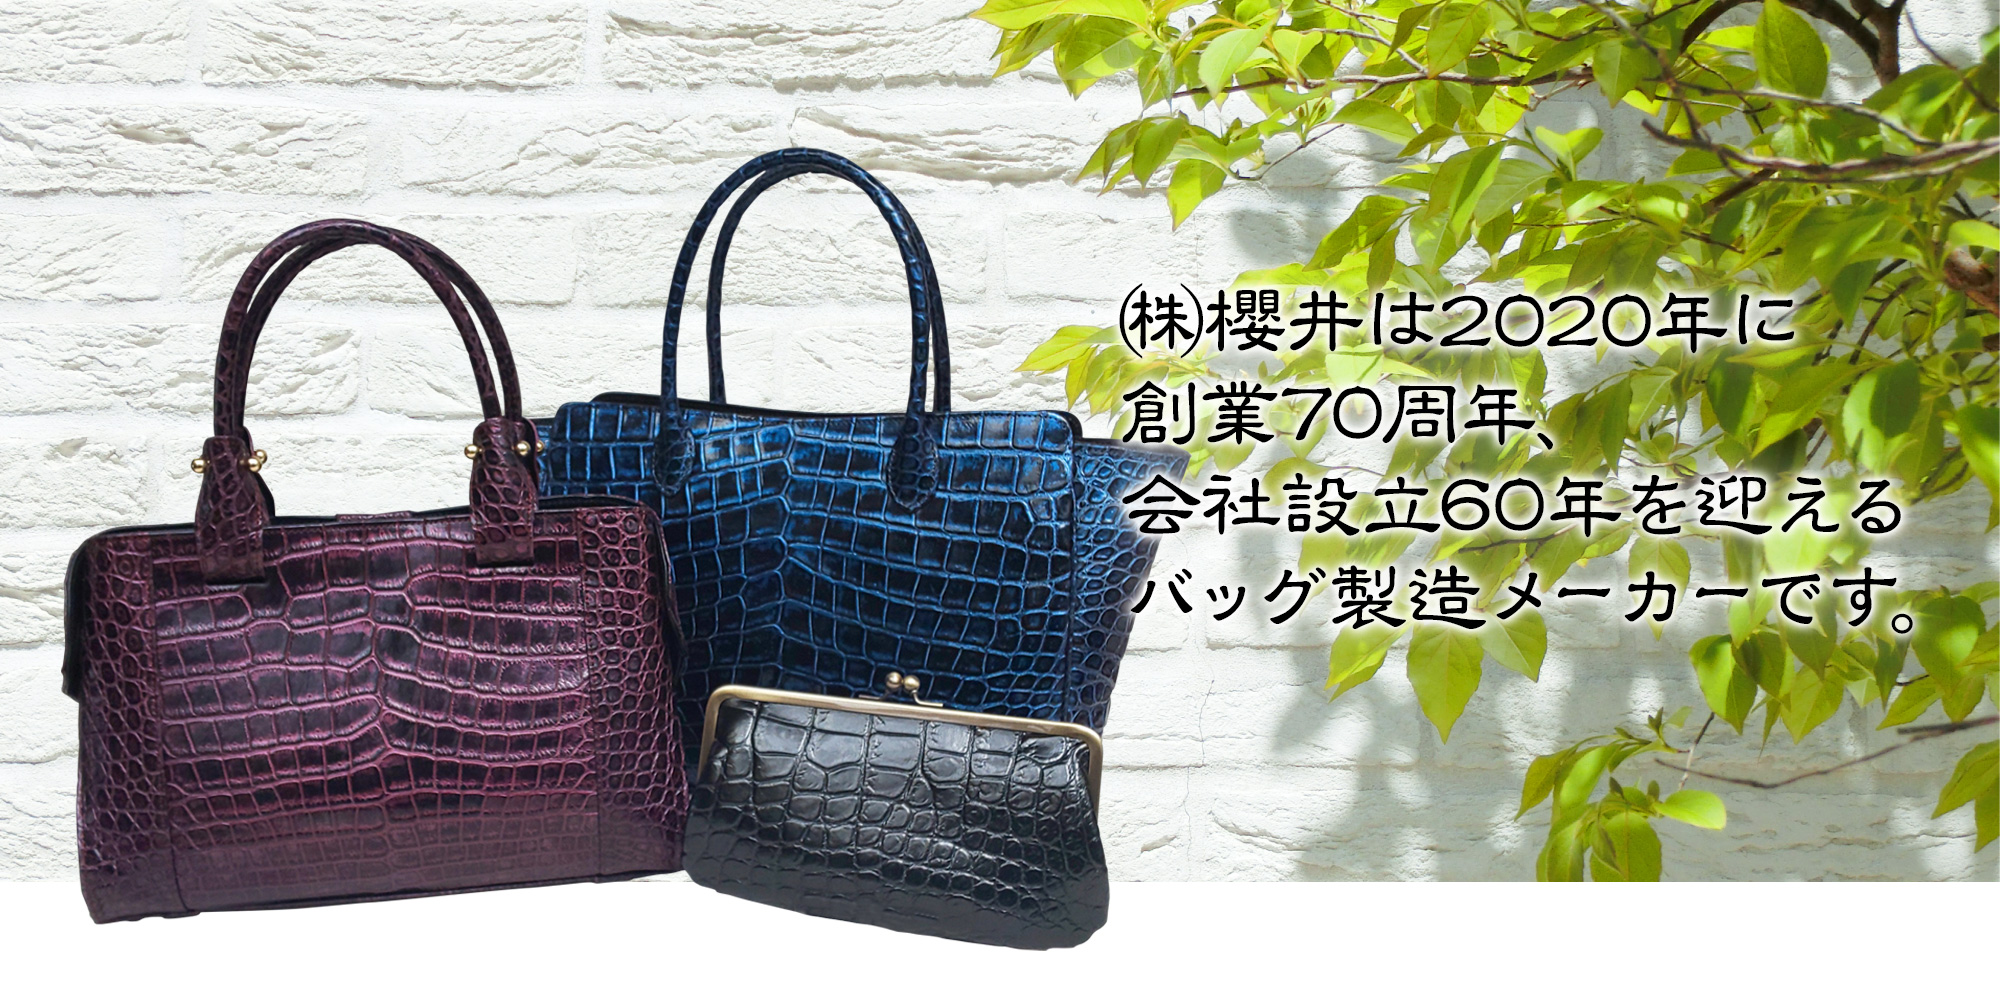 株式会社 櫻井は2020年に創業70周年、会社設立60年を迎えるバッグ製造メーカーです。